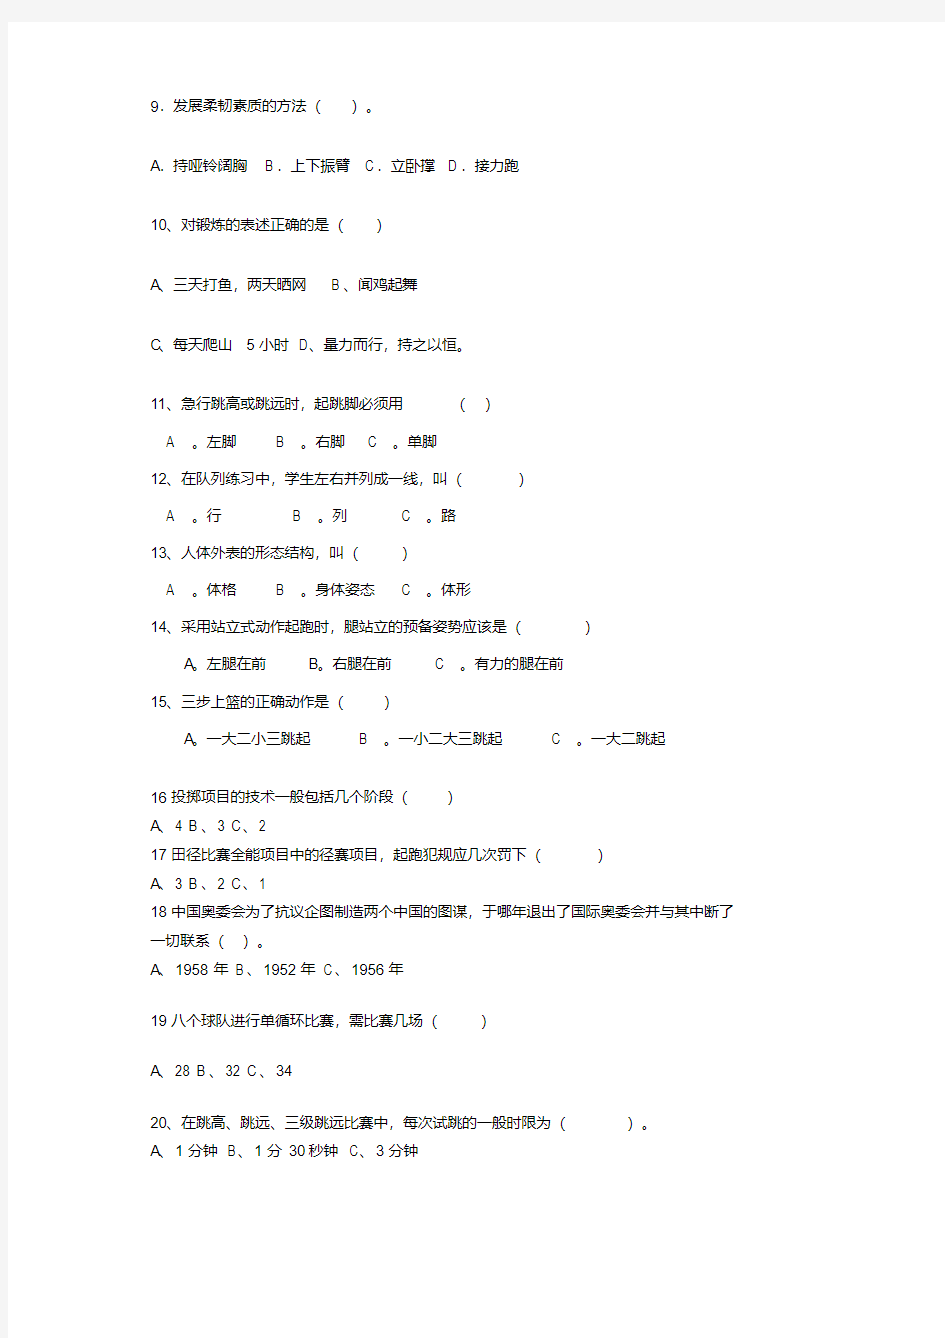 初中体育理论考试试卷.pdf